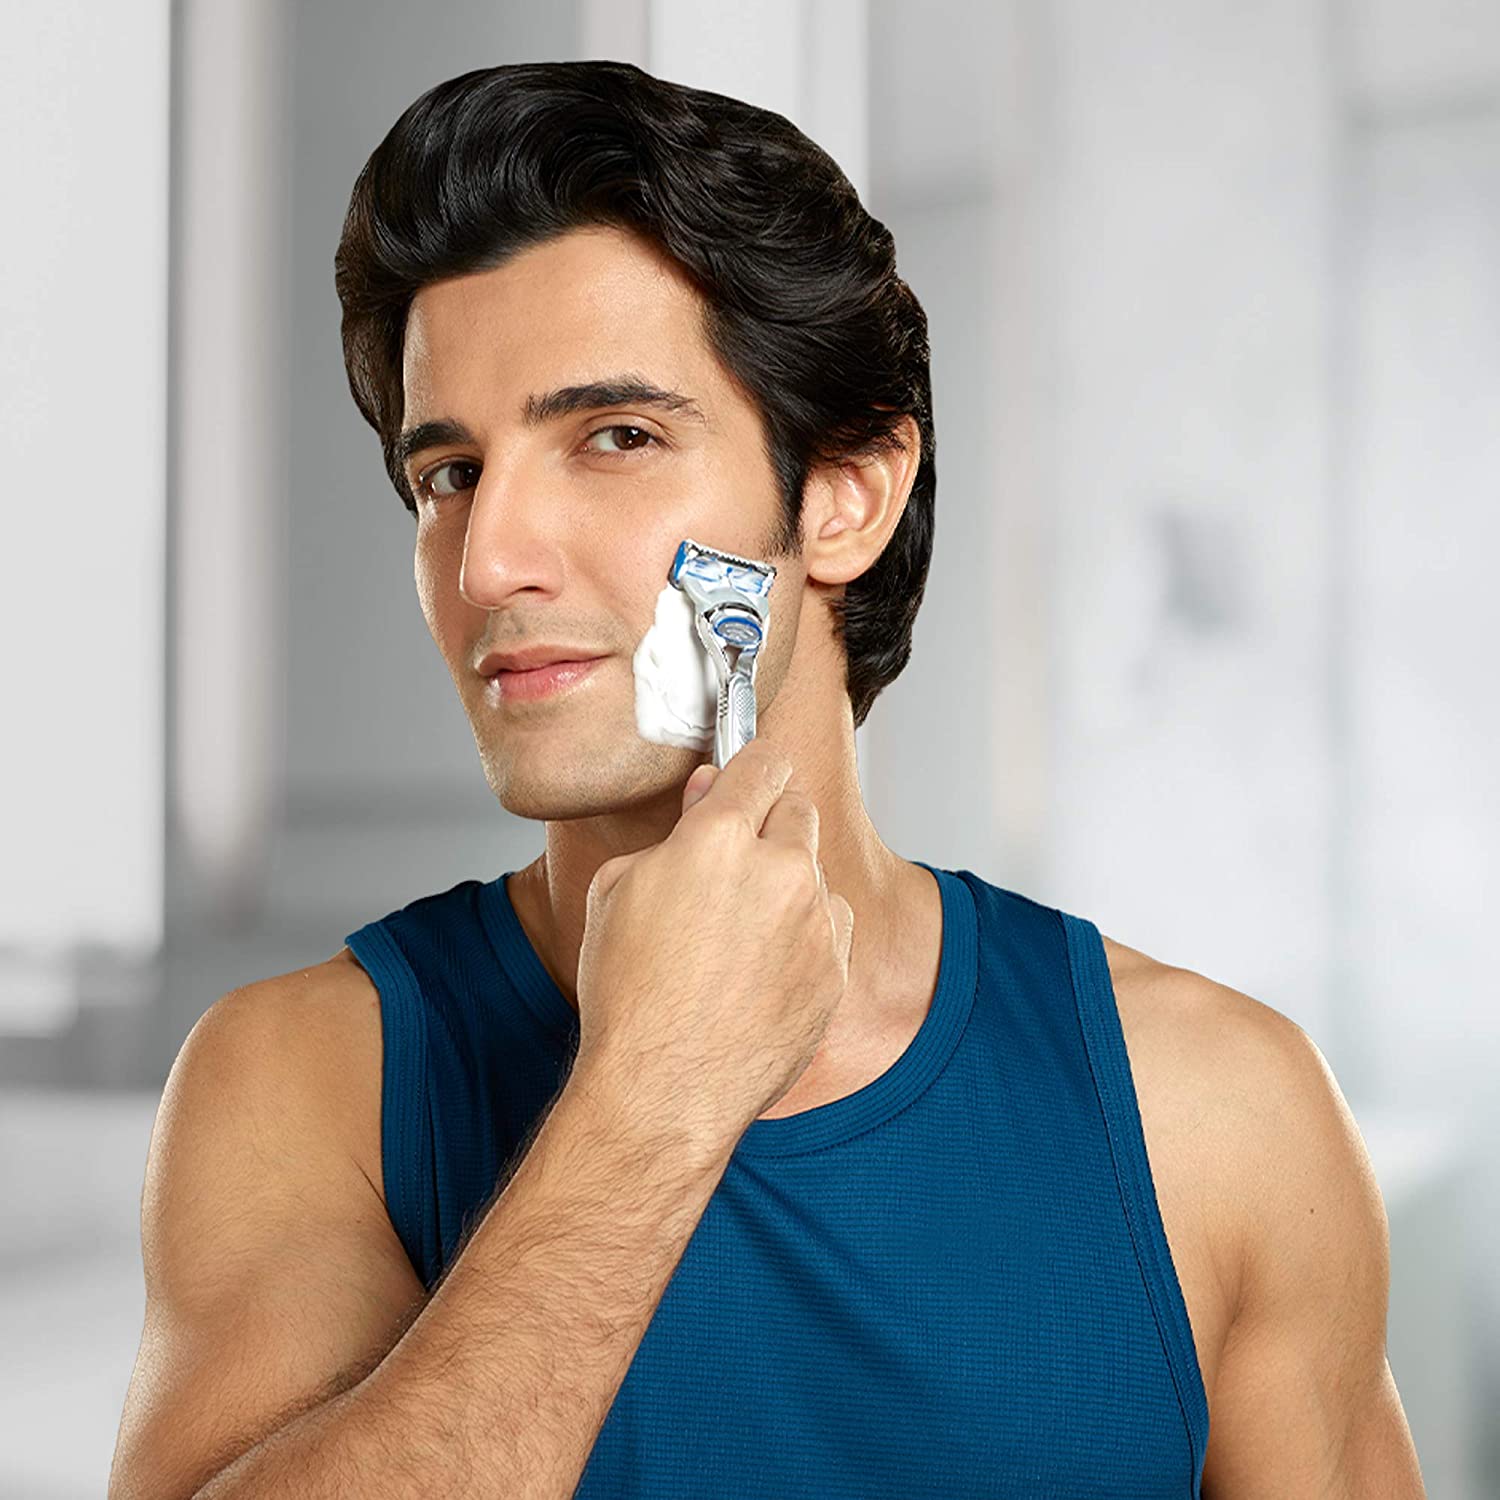 Gillette Regular Shaving Foam 418 g